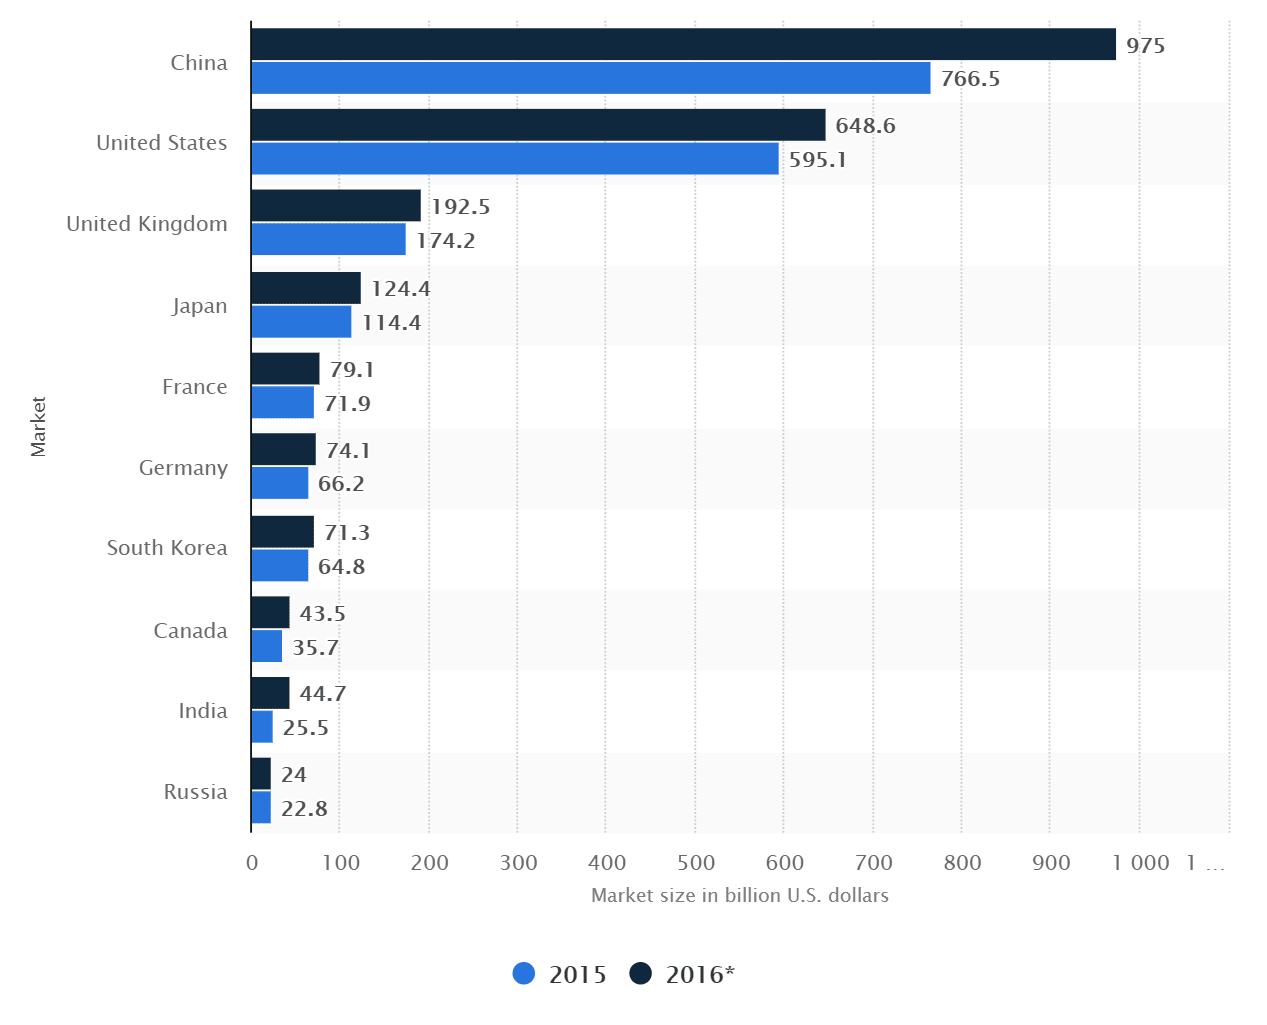 료국가별 B2C 이커머스 시장 규모 비교, Countries with the largest B2C e-commerce markets in 2015 and 2016 (in billion U.S. dollars)